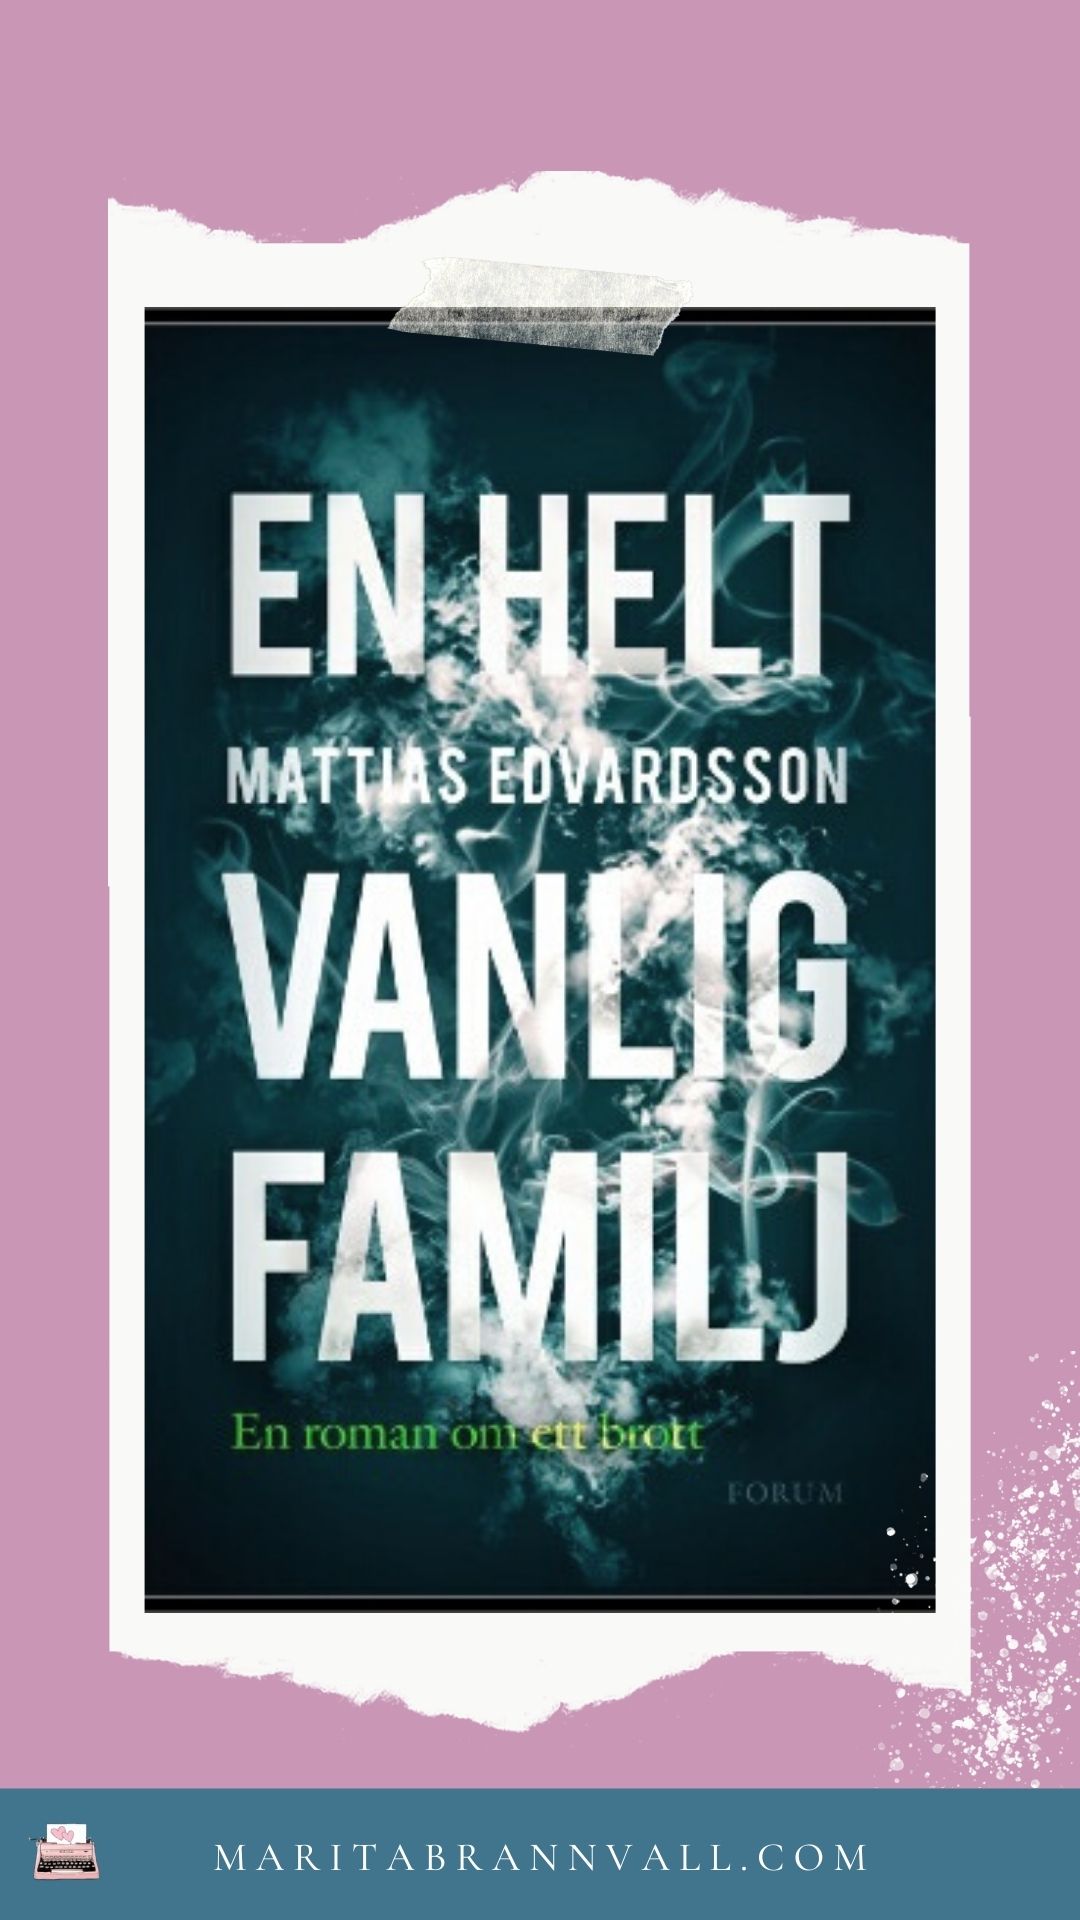 En helt vanlig familj av Mattias Edvardsson - Marita Brännvall